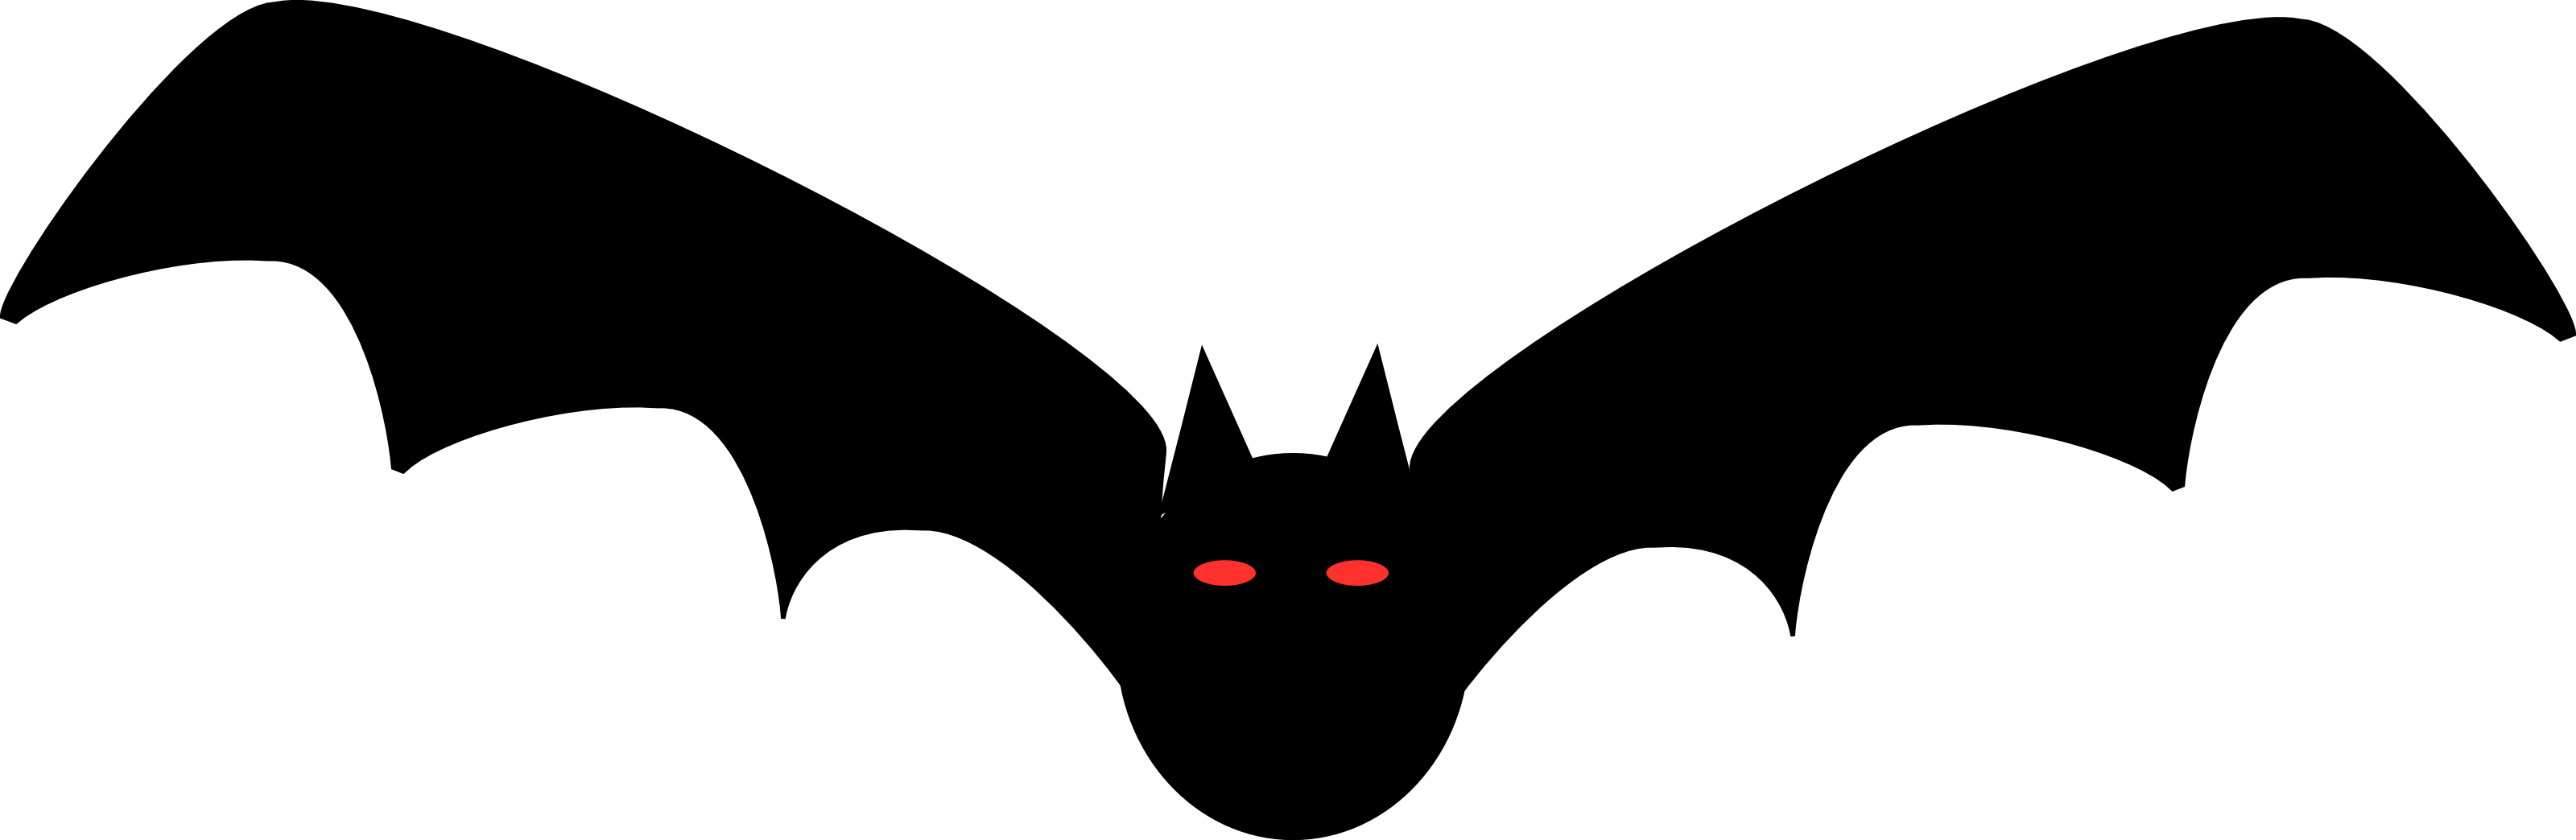 Bat clipart free clipart images 7